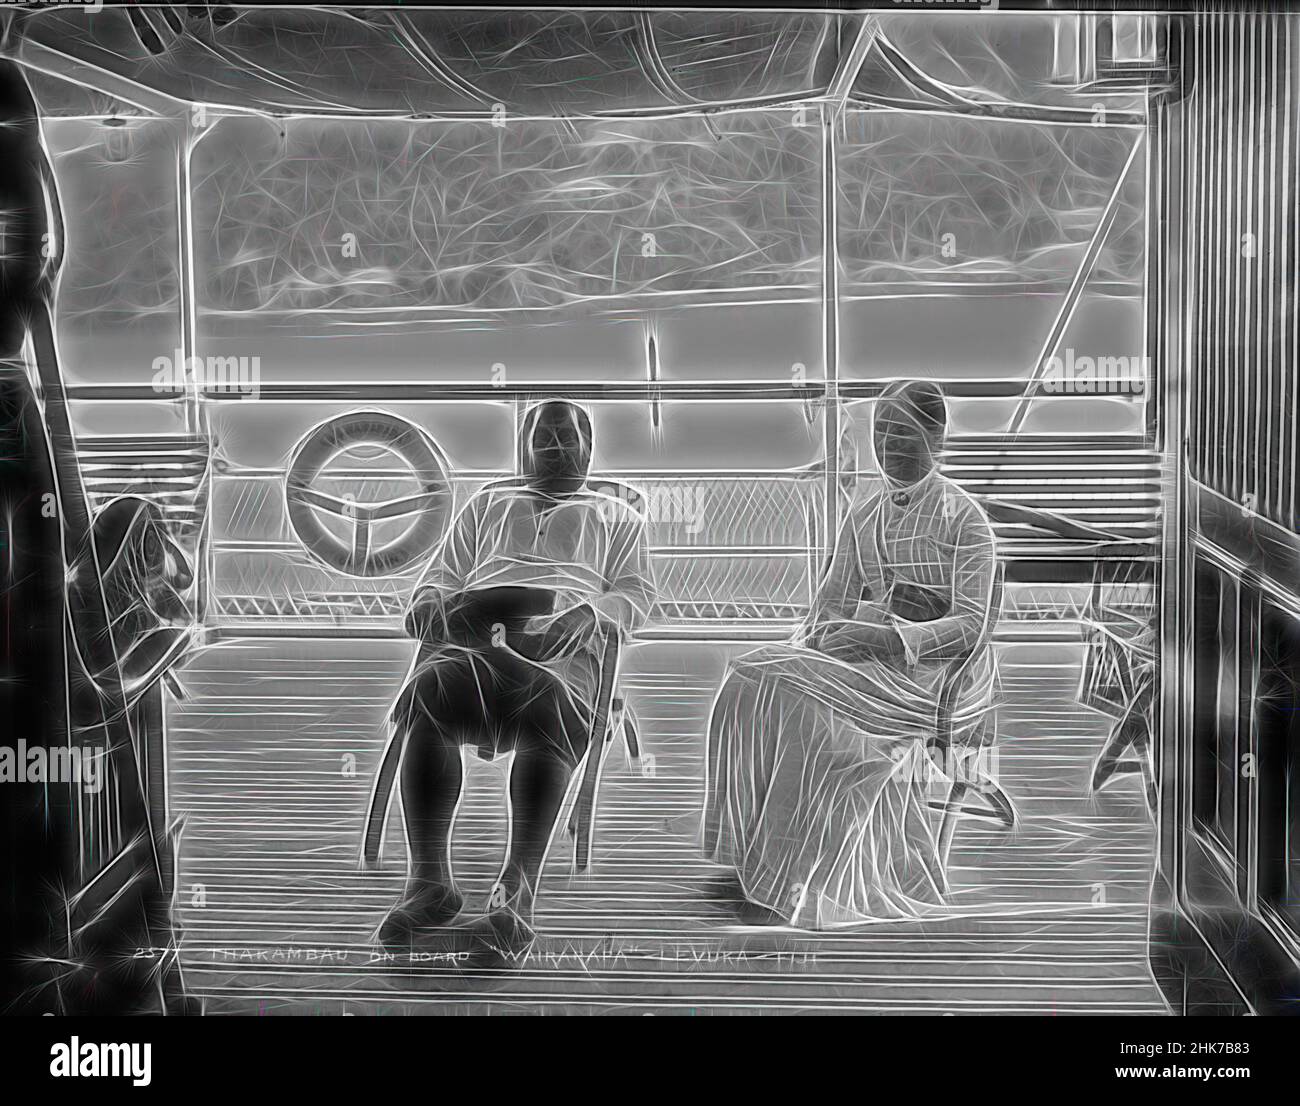 Inspirado por Thakambau a bordo de Wairarapa, Levuka, Fiji, Burton Brothers estudio, estudio de fotografía, 1884, Nueva Zelanda, fotografía en blanco y negro, hombre de Fiji (izquierda), en uniforme, Y mujer, vestida con ropa formal europea, sentada en sillas bajo una sombra de lona en la cubierta de un barco. Cabina de barcos, reimaginado por Artotop. Arte clásico reinventado con un toque moderno. Diseño de brillo cálido y alegre y luminosidad e radiación de rayos de luz. Fotografía inspirada en el surrealismo y el futurismo, que abarca la energía dinámica de la tecnología moderna, el movimiento, la velocidad y la revolución de la cultura Foto de stock